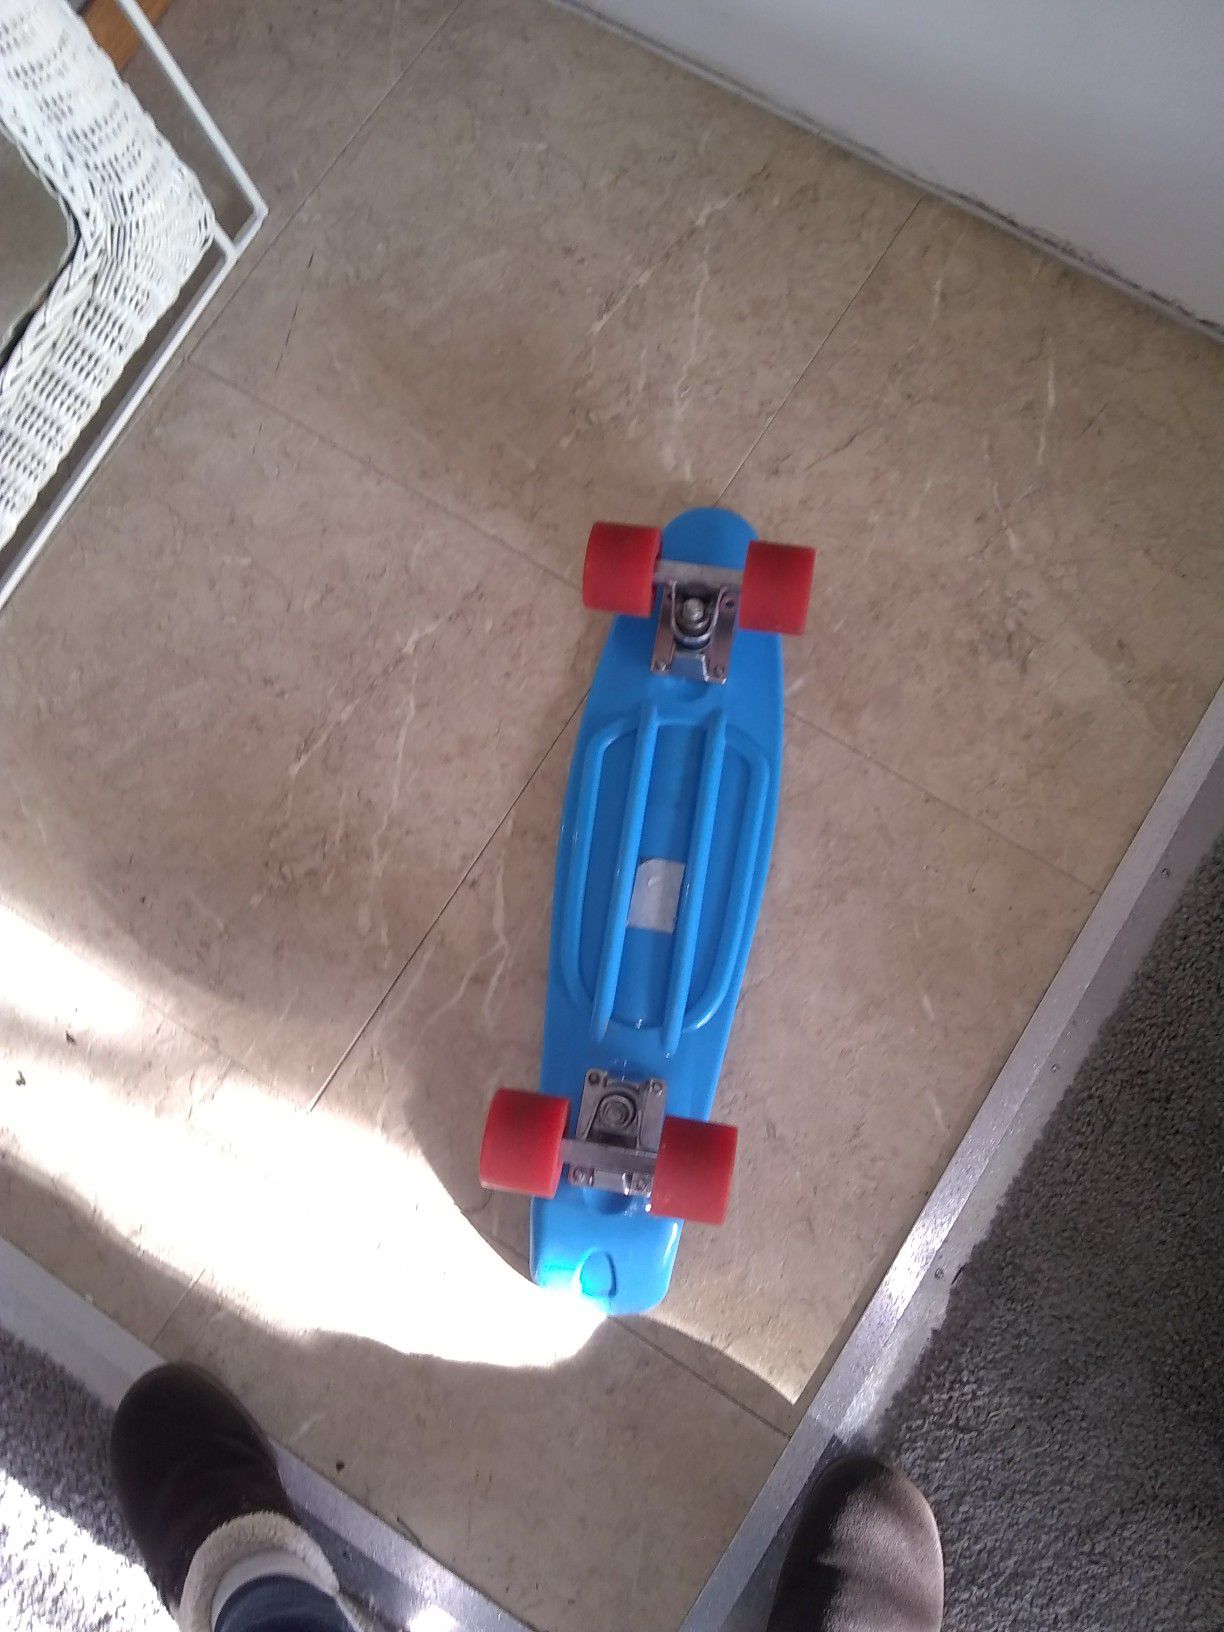 Small skate board